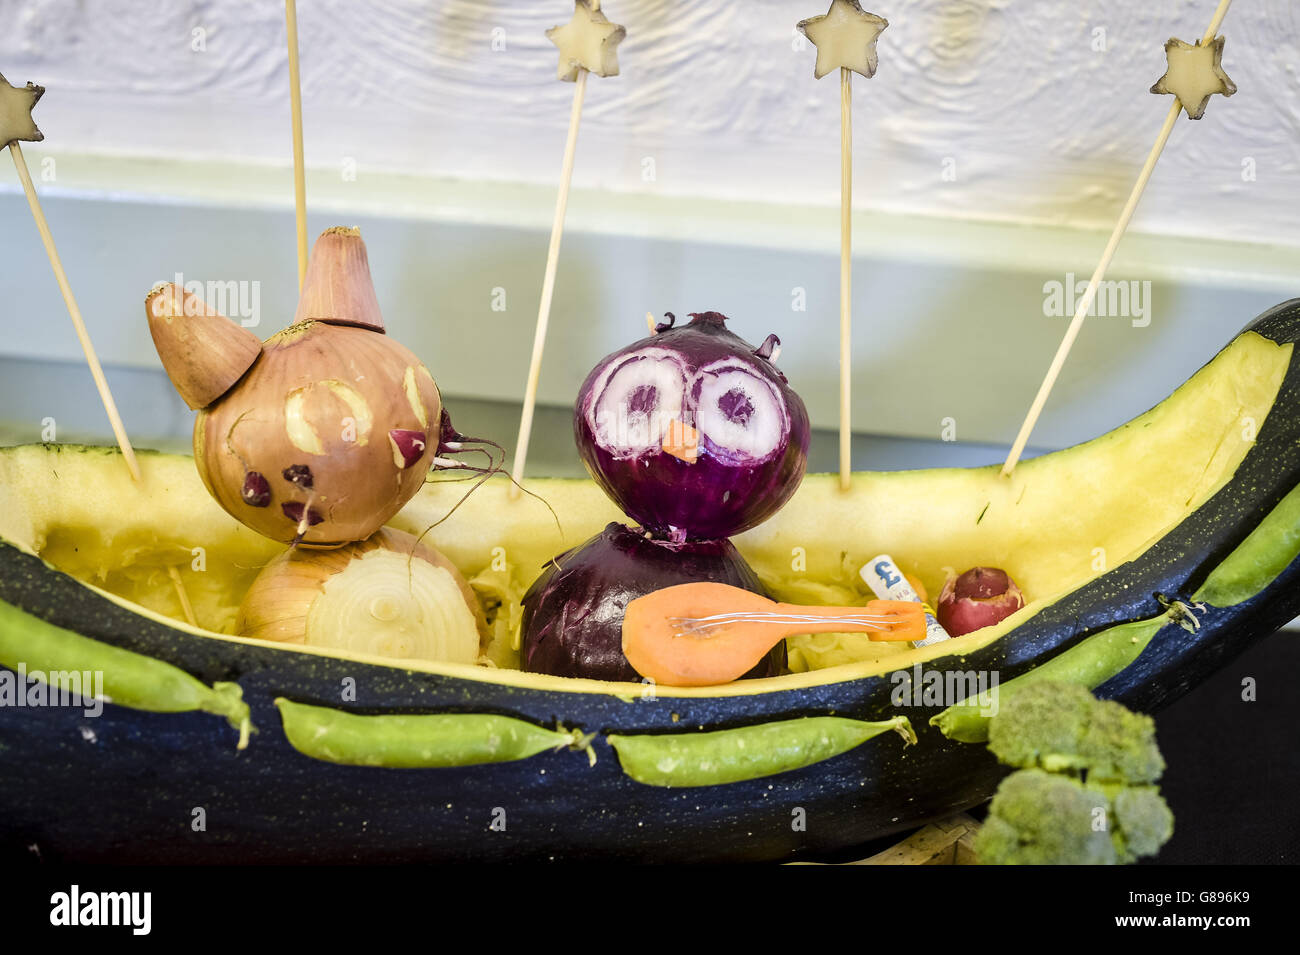 Photo. Une sculpture de la comptine rhyme 'le hibou et le pussycat' faite à partir de légumes par lois Field remporte le premier prix de la catégorie 12-16 ans du Newent Onion Fayre, Gloucestershire. Banque D'Images